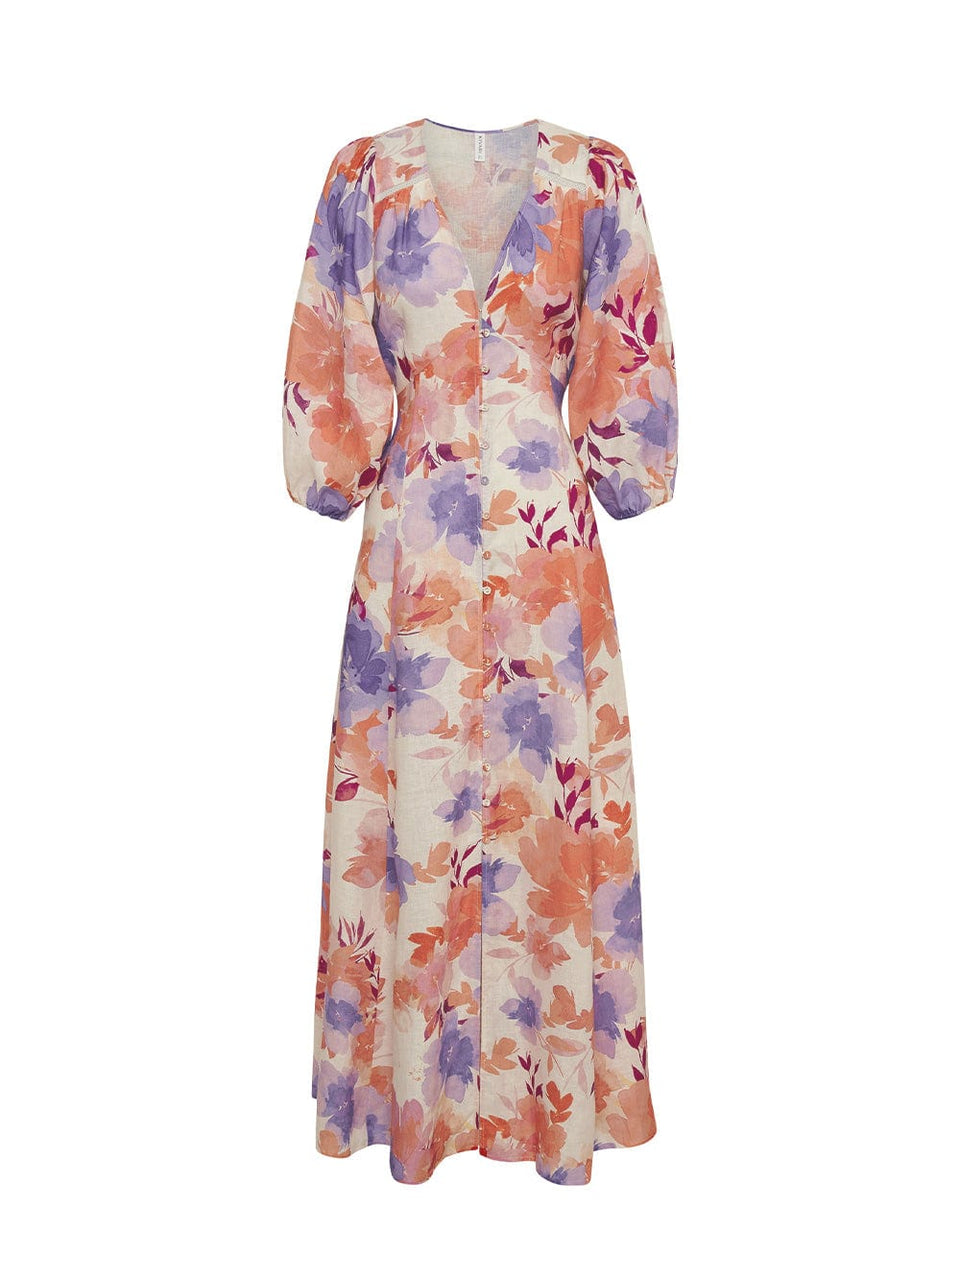 Johannes Maxi Dress KIVARI | Pink and purple floral maxi dress